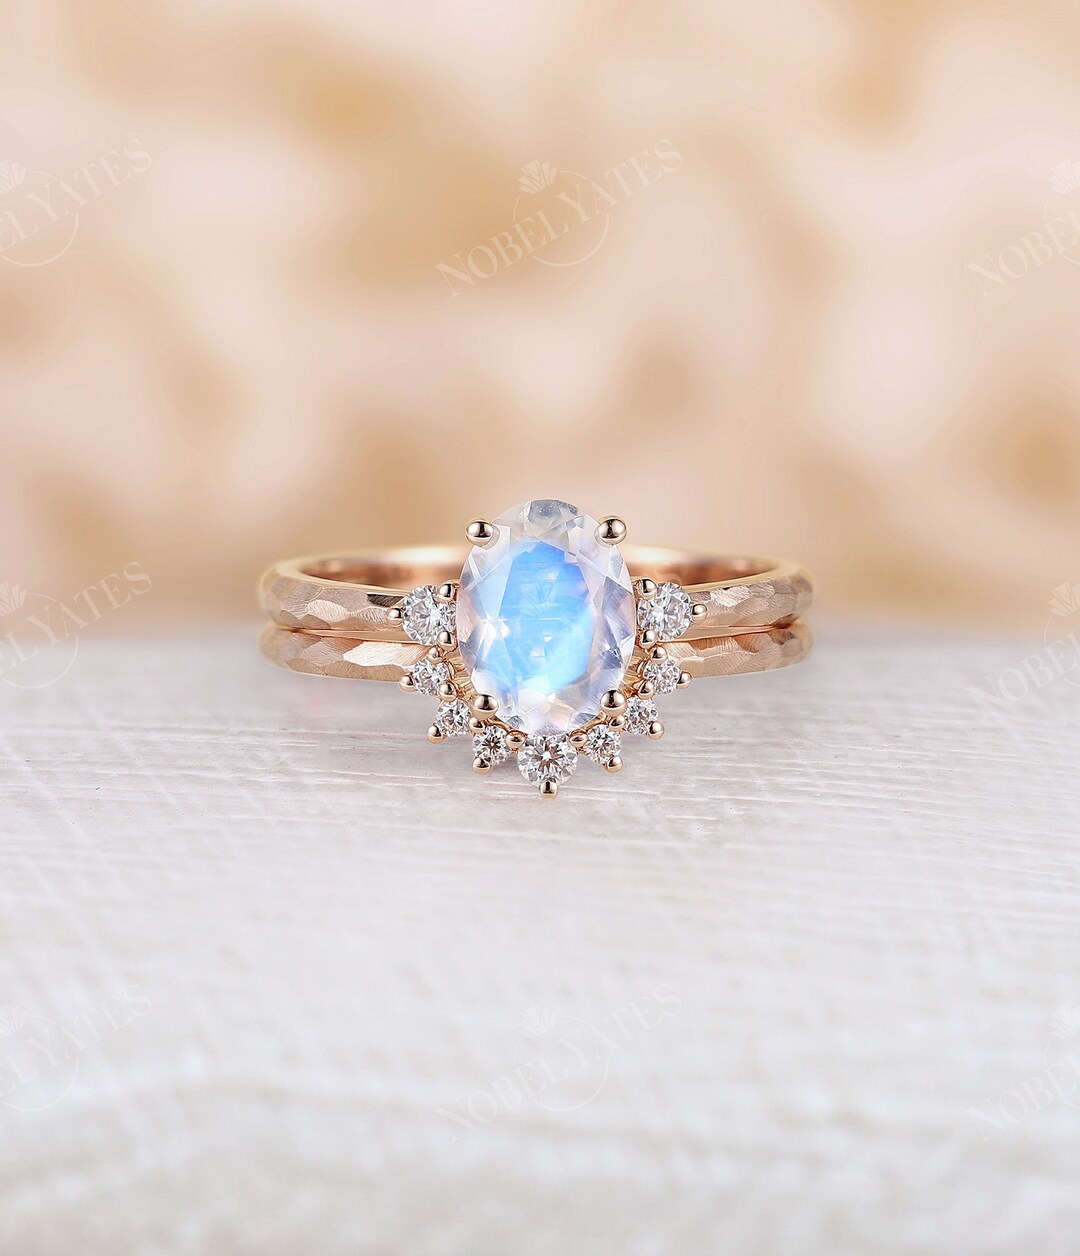 Antique Moonstone Engagement Ring Set Rose Gold Unique Hammered Design ...